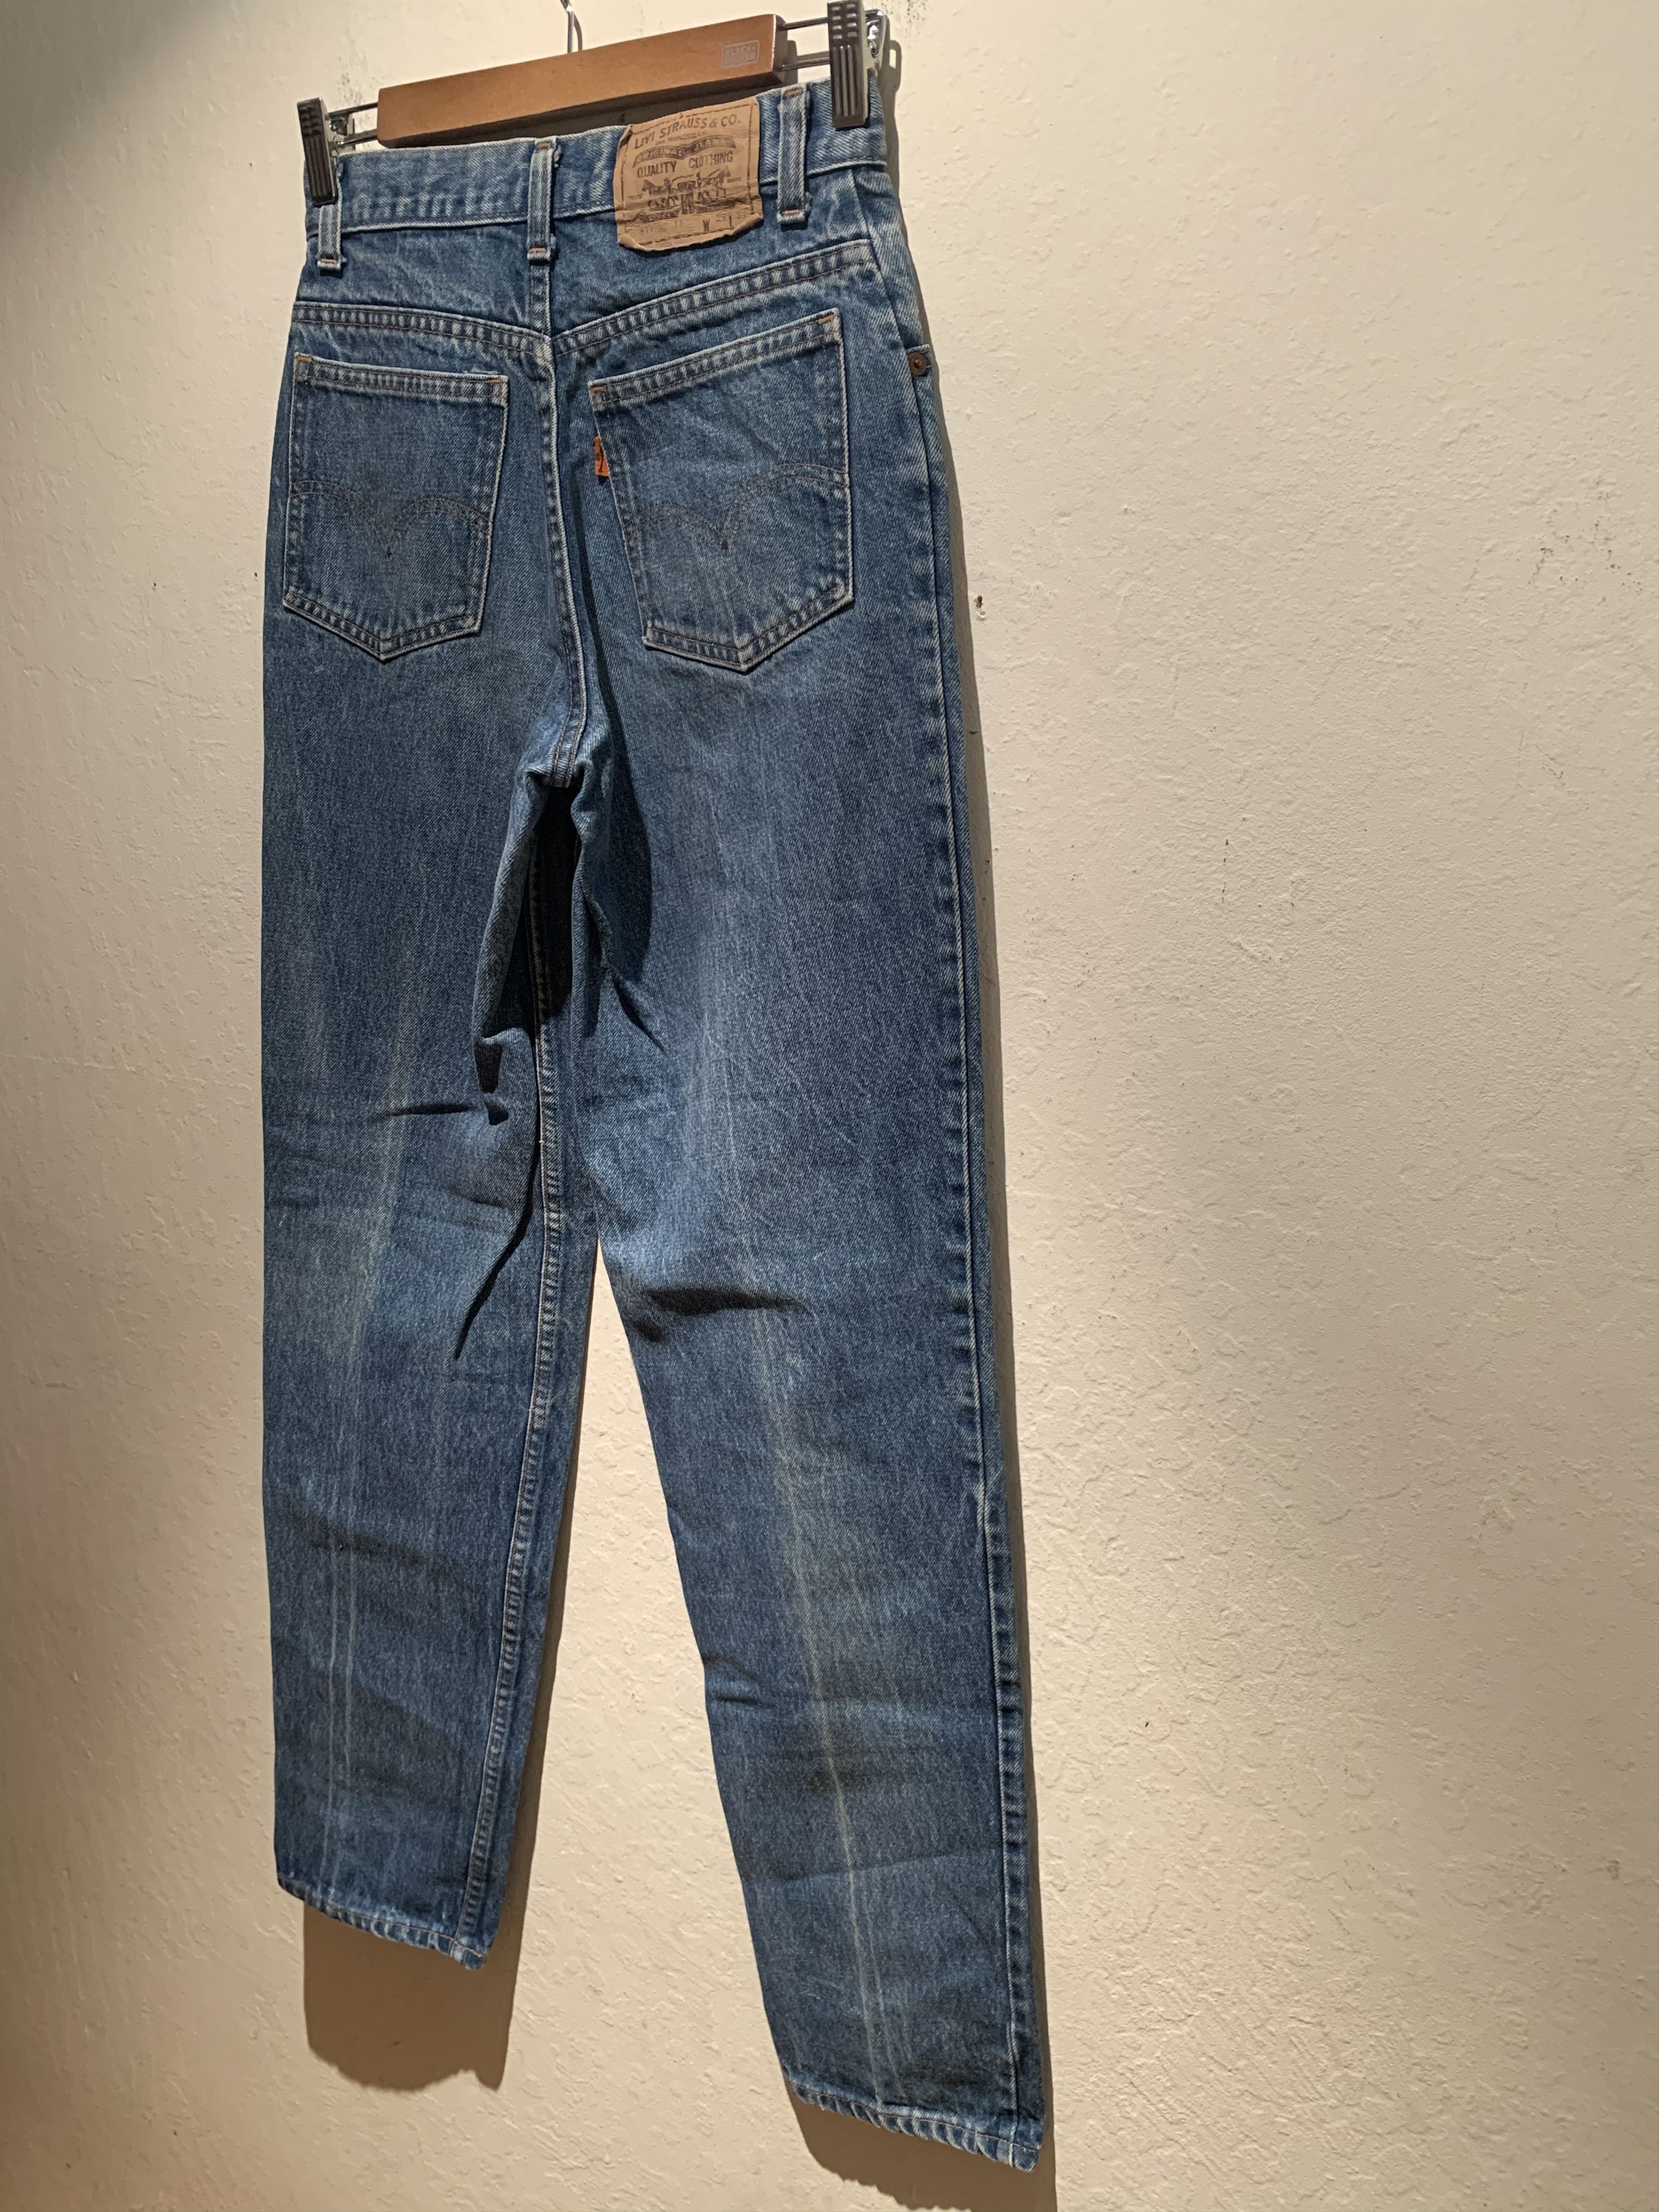 Levi's *RARE* Vintage Levi’s 611 Orange Tab France-Made Denim Jeans Size US 29 - 5 Thumbnail